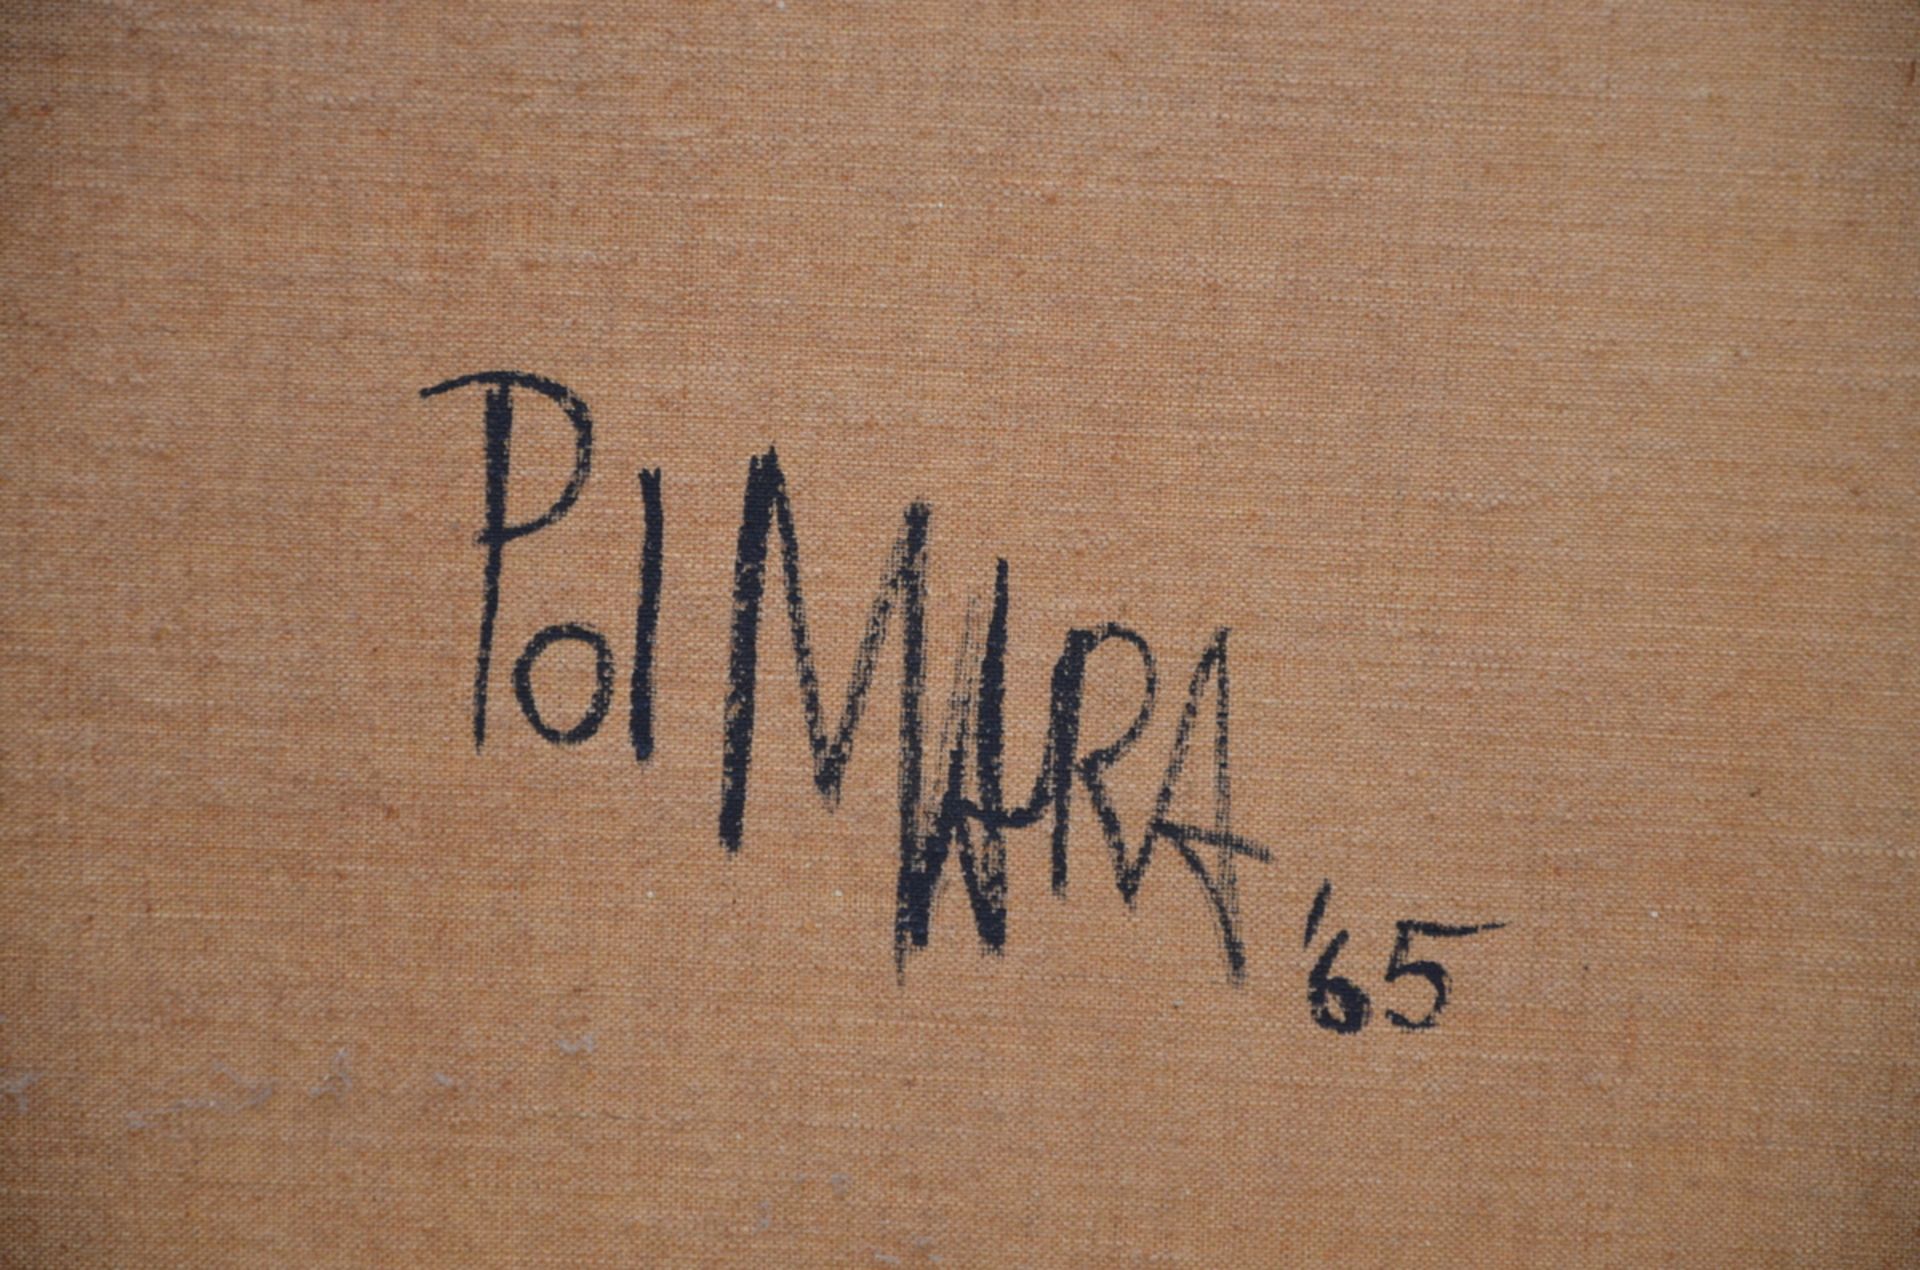 Pol Mara 1965: painting (o/c) 'untitled' (196x130 cm) - Image 5 of 5